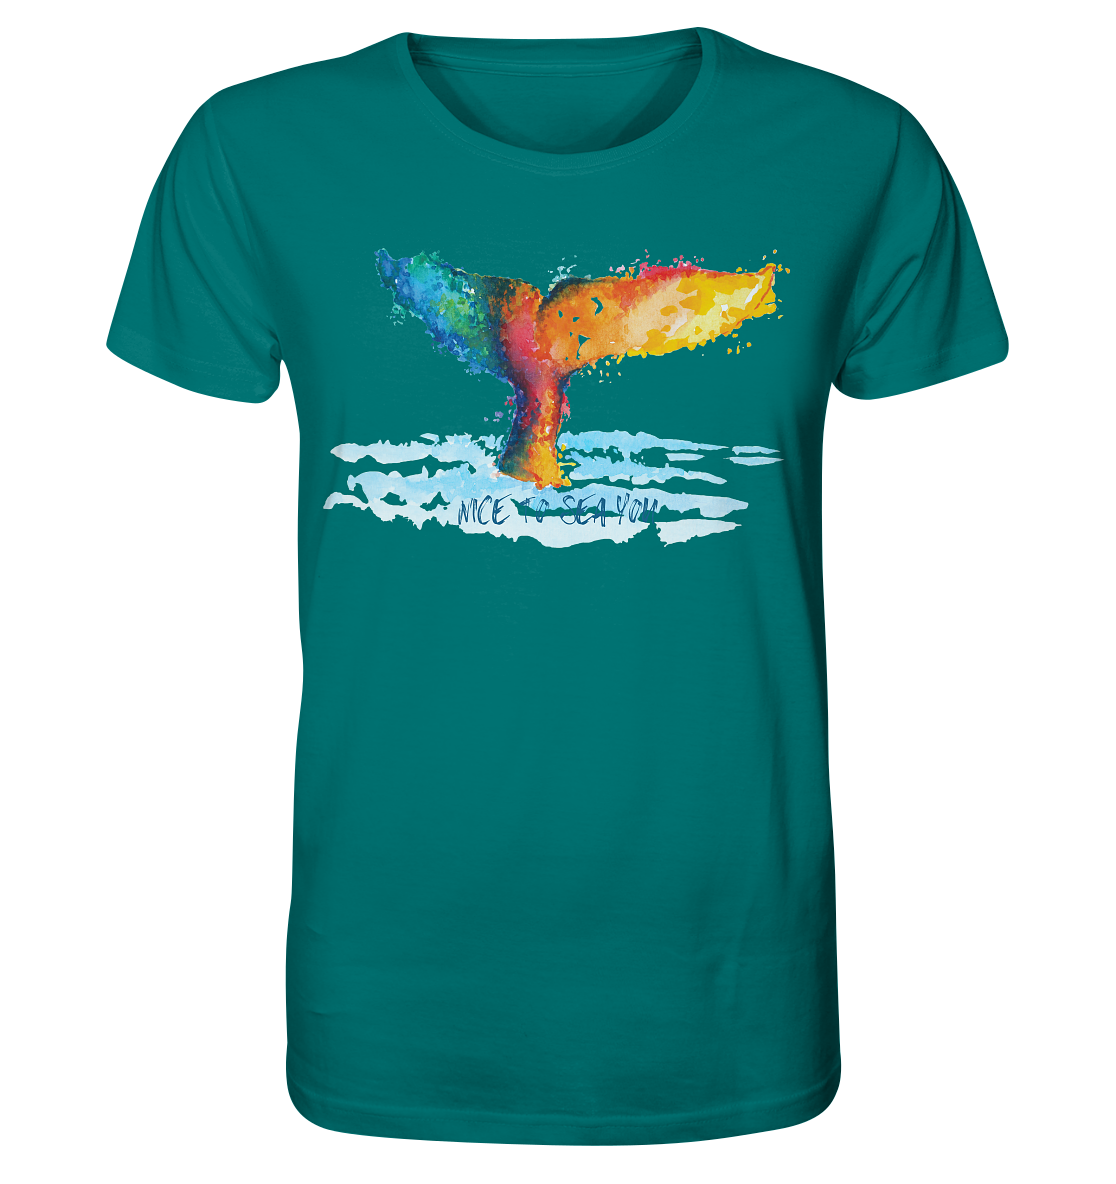 Walefin - Nice to sea you!  - Mens Organic Shirt